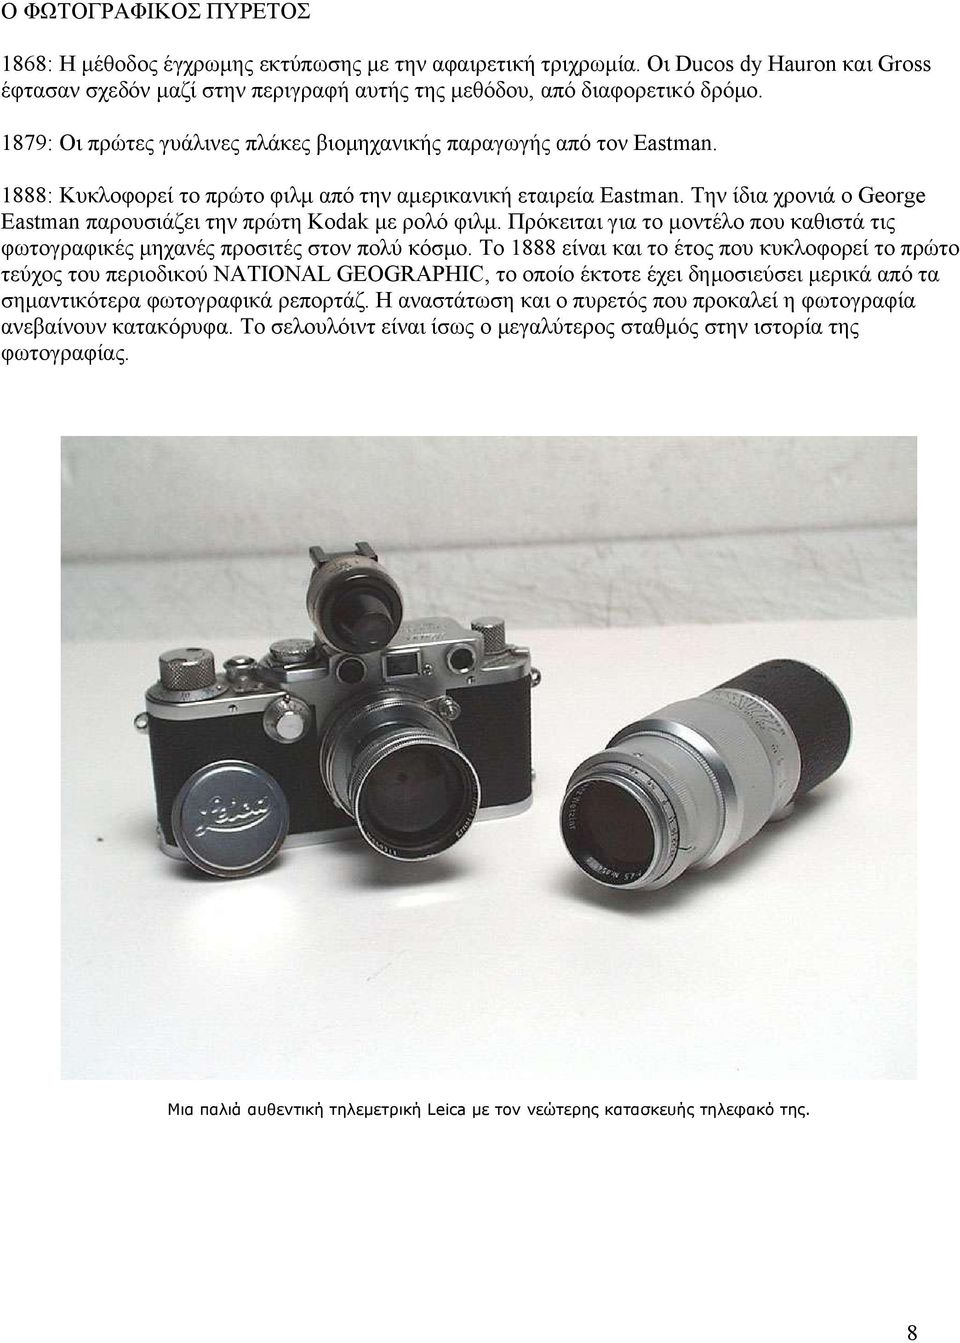 Την ίδια χρονιά ο George Eastman παρουσιάζει την πρώτη Kodak με ρολό φιλμ. Πρόκειται για το μοντέλο που καθιστά τις φωτογραφικές μηχανές προσιτές στον πολύ κόσμο.